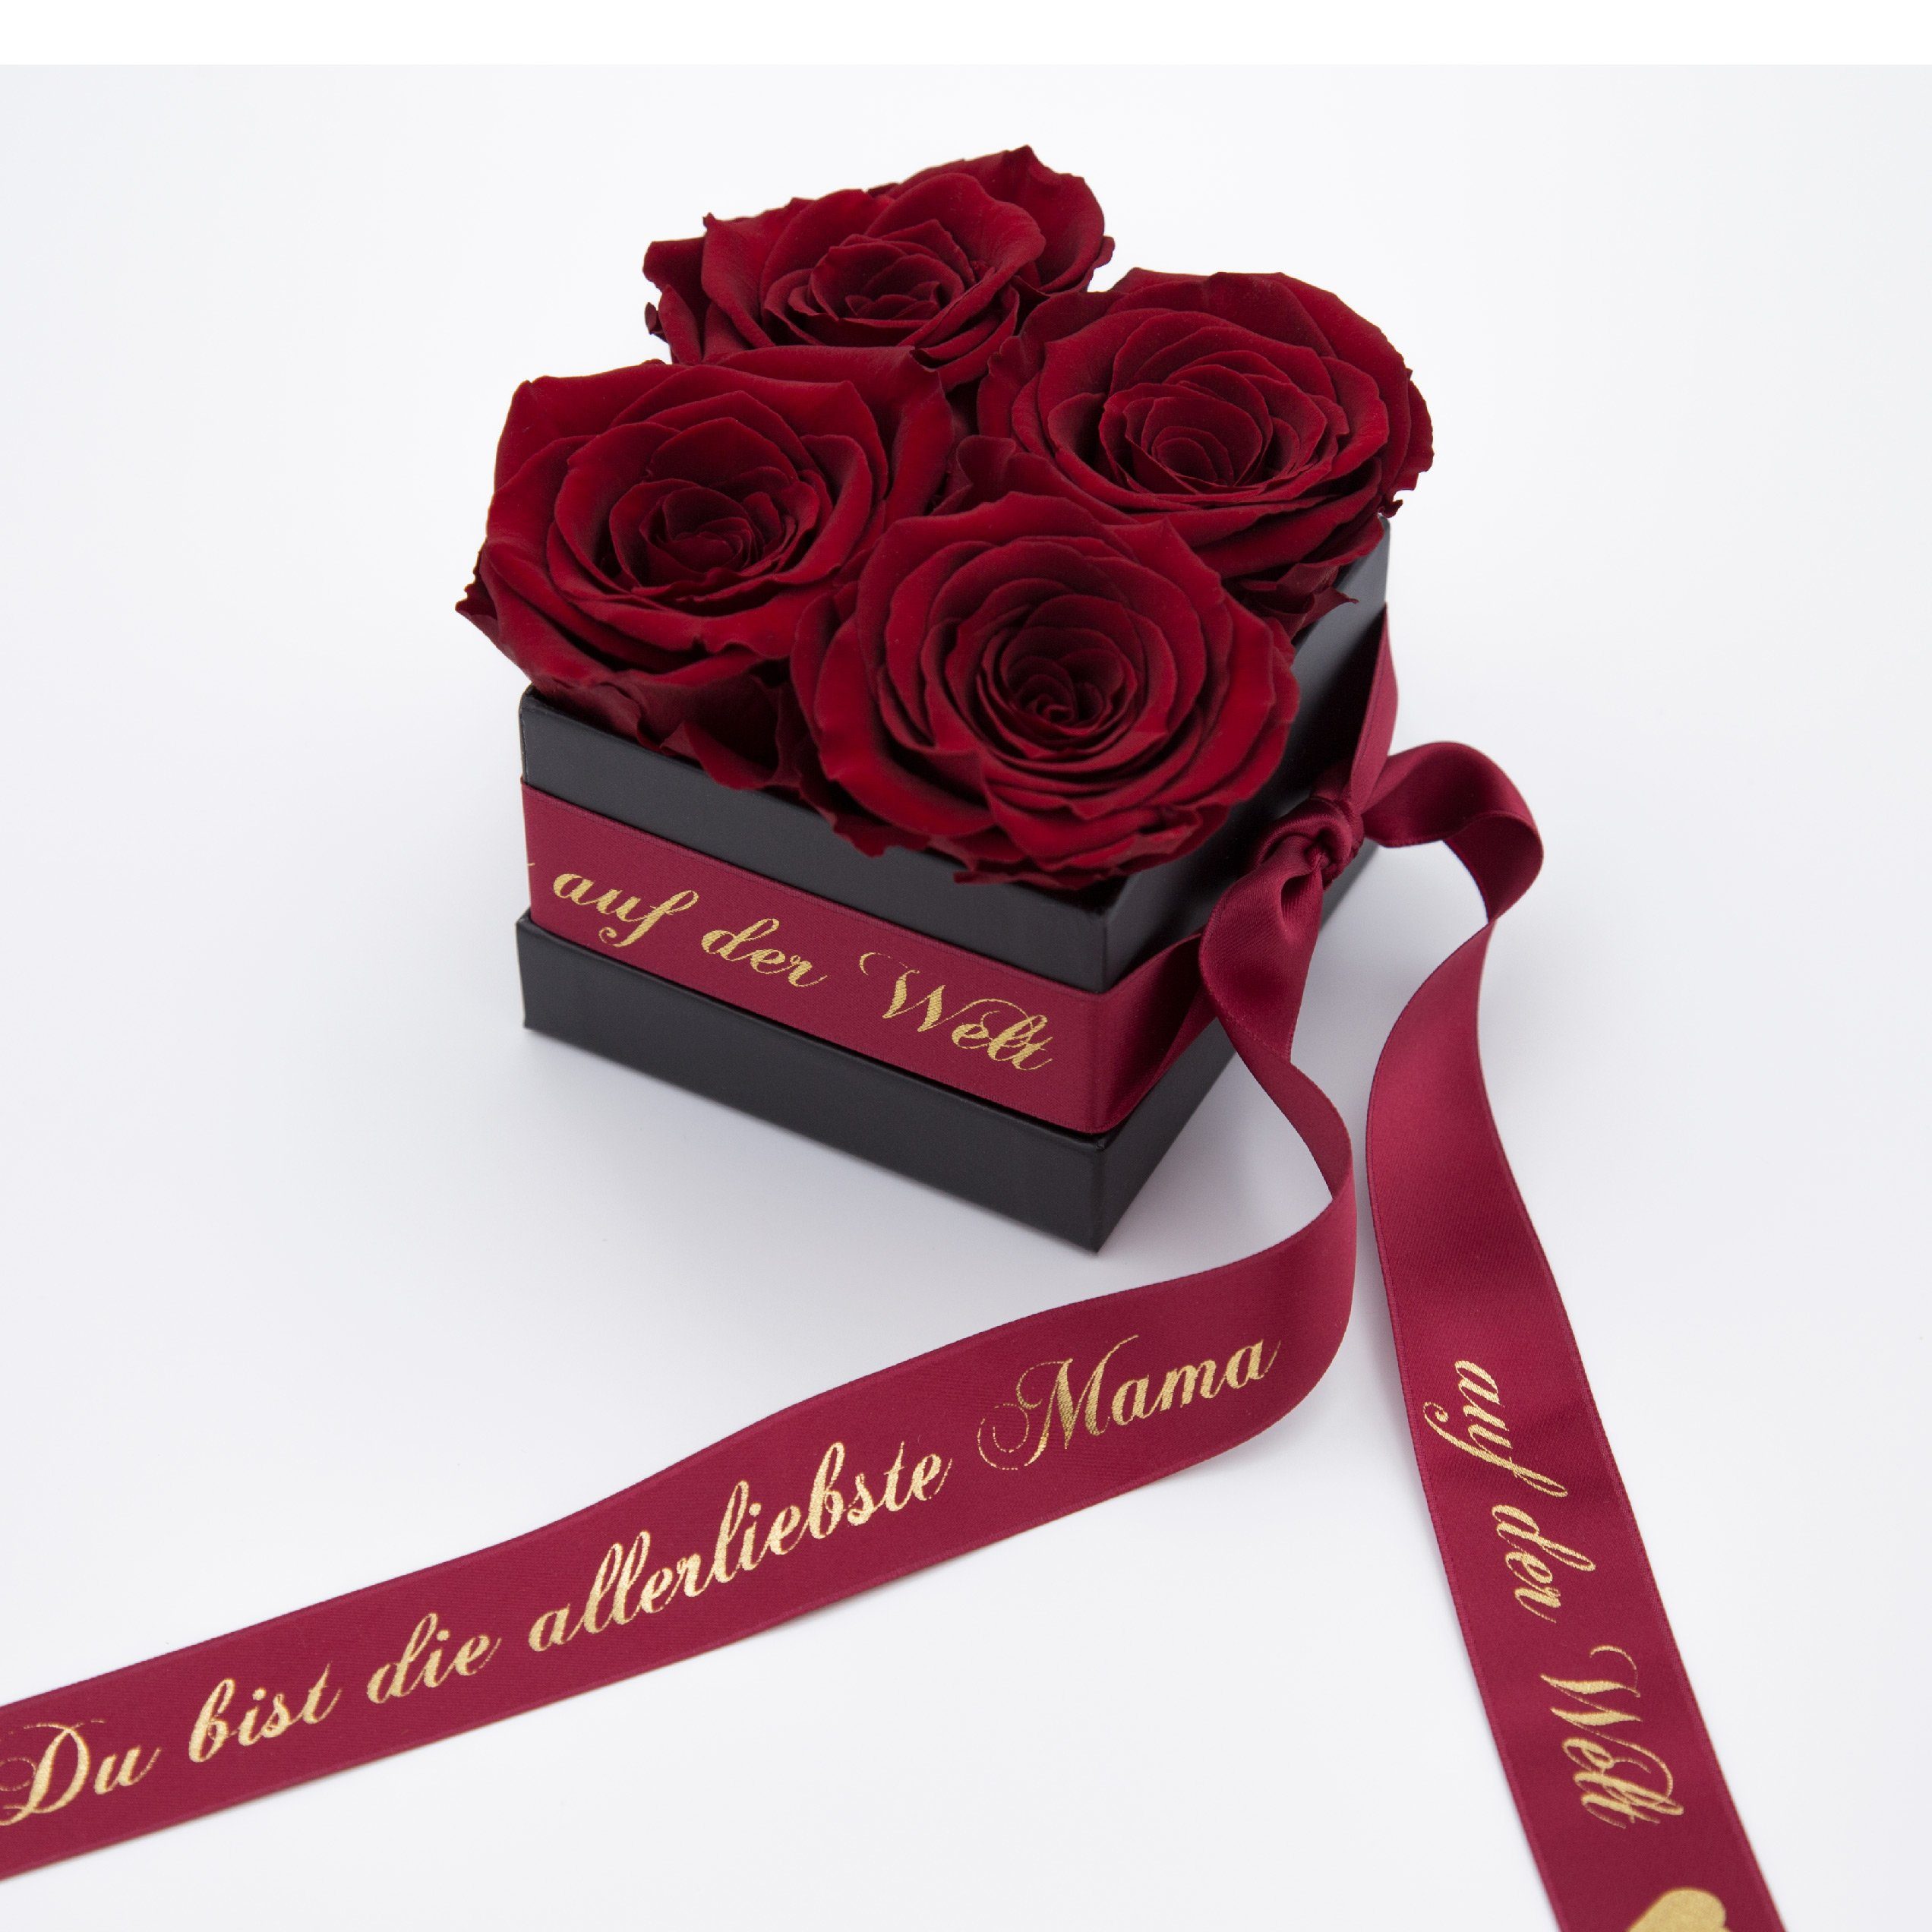 Geschenk Kunstblume Rosen Echte der Allerliebste 4 konservierte 3 Rosenbox Höhe Rosen haltbar cm, 8,5 Welt Jahre Mama Rose, auf Burgundy SCHULZ ROSEMARIE Heidelberg,